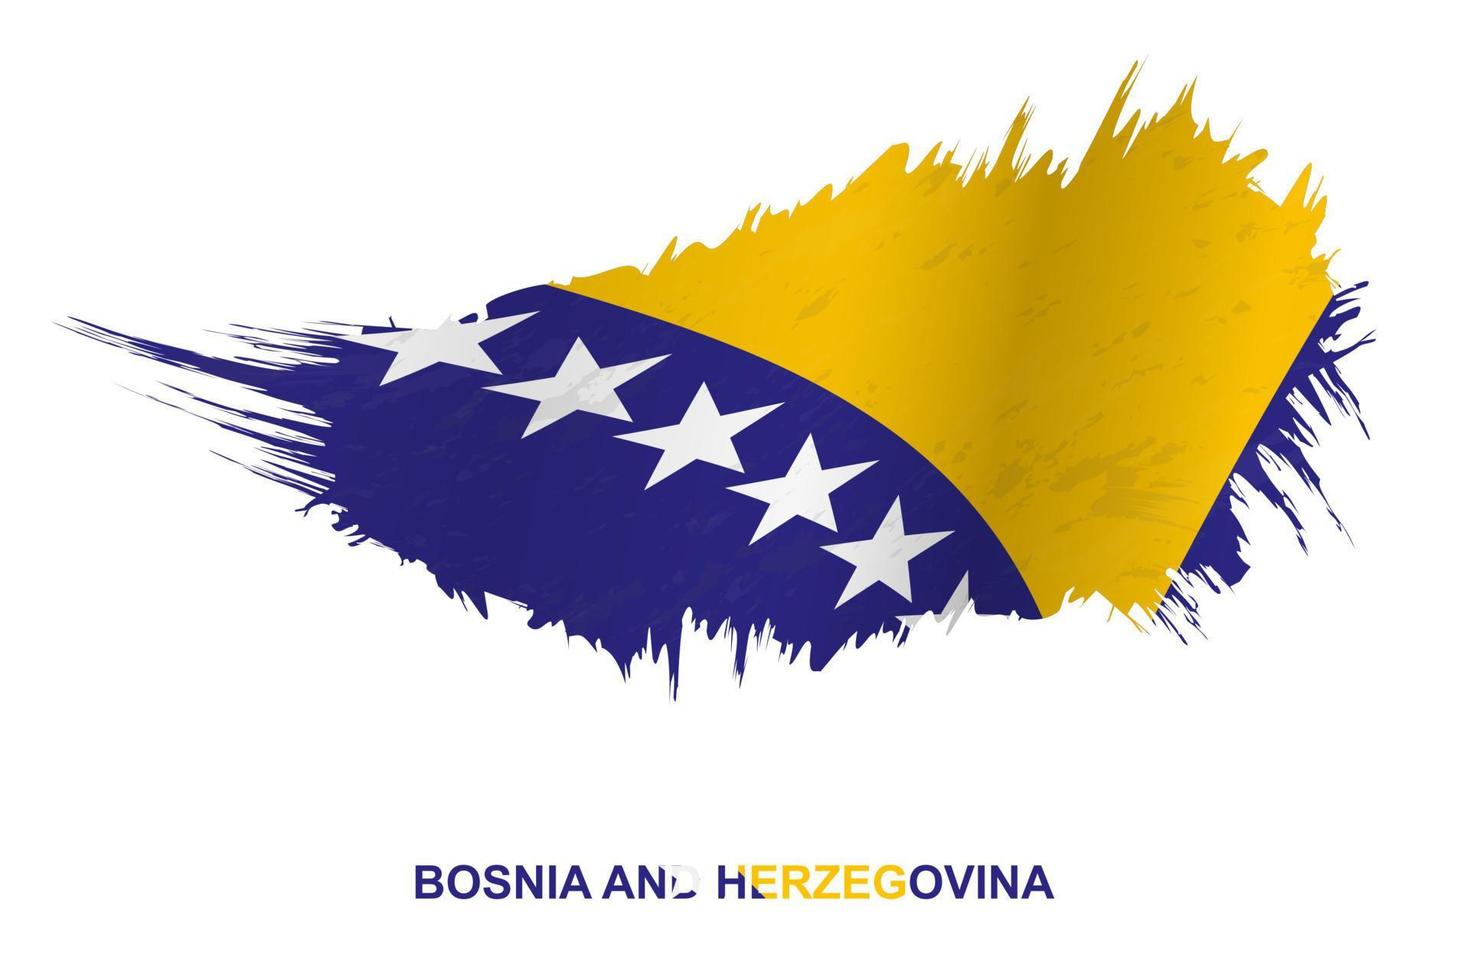 drapeau de la bosnie-herzégovine dans un style grunge avec effet ondulant. vecteur